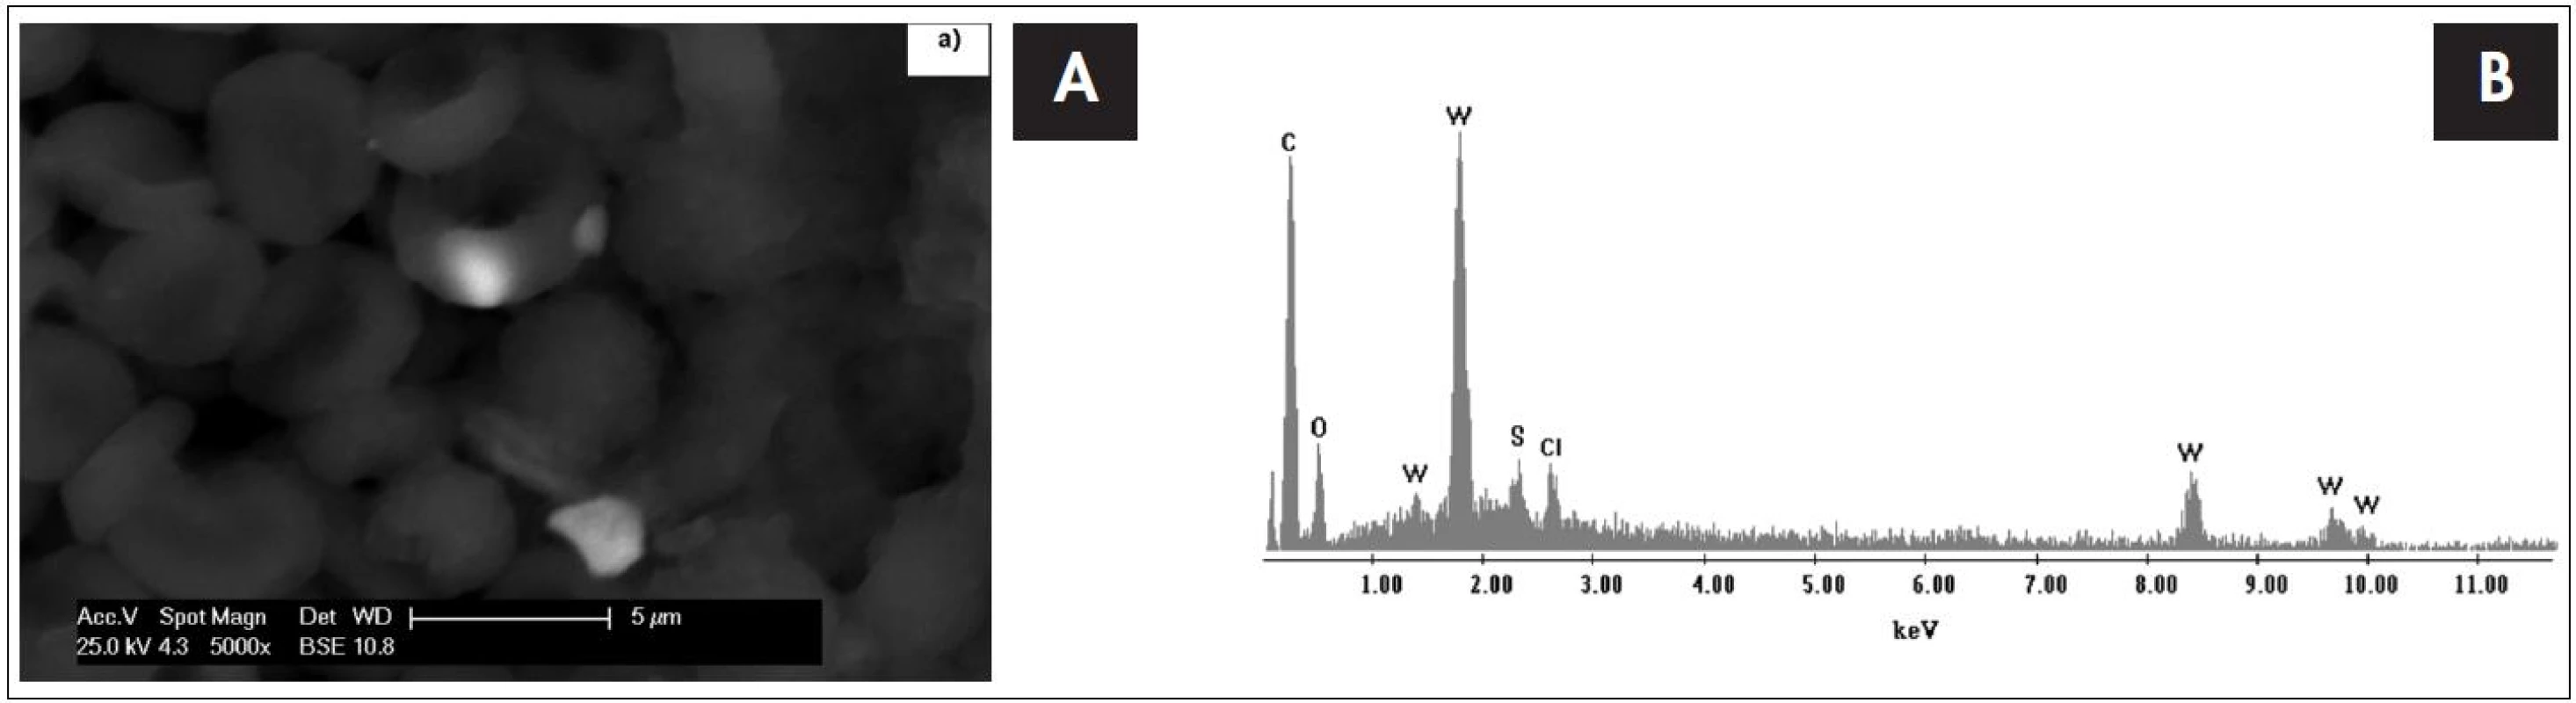 Snímek tkáně mozkového nádoru (glioblastom) s erytrocyty ze skenovacího elektronového mikroskopu s EDS detektorem s odpovídajícím EDS spektrem, který je výsledkem bodové analýzy. Píky označené písmenem W dokazují přítomnost nanočástice s obsahem wolframu v erytrocytu.